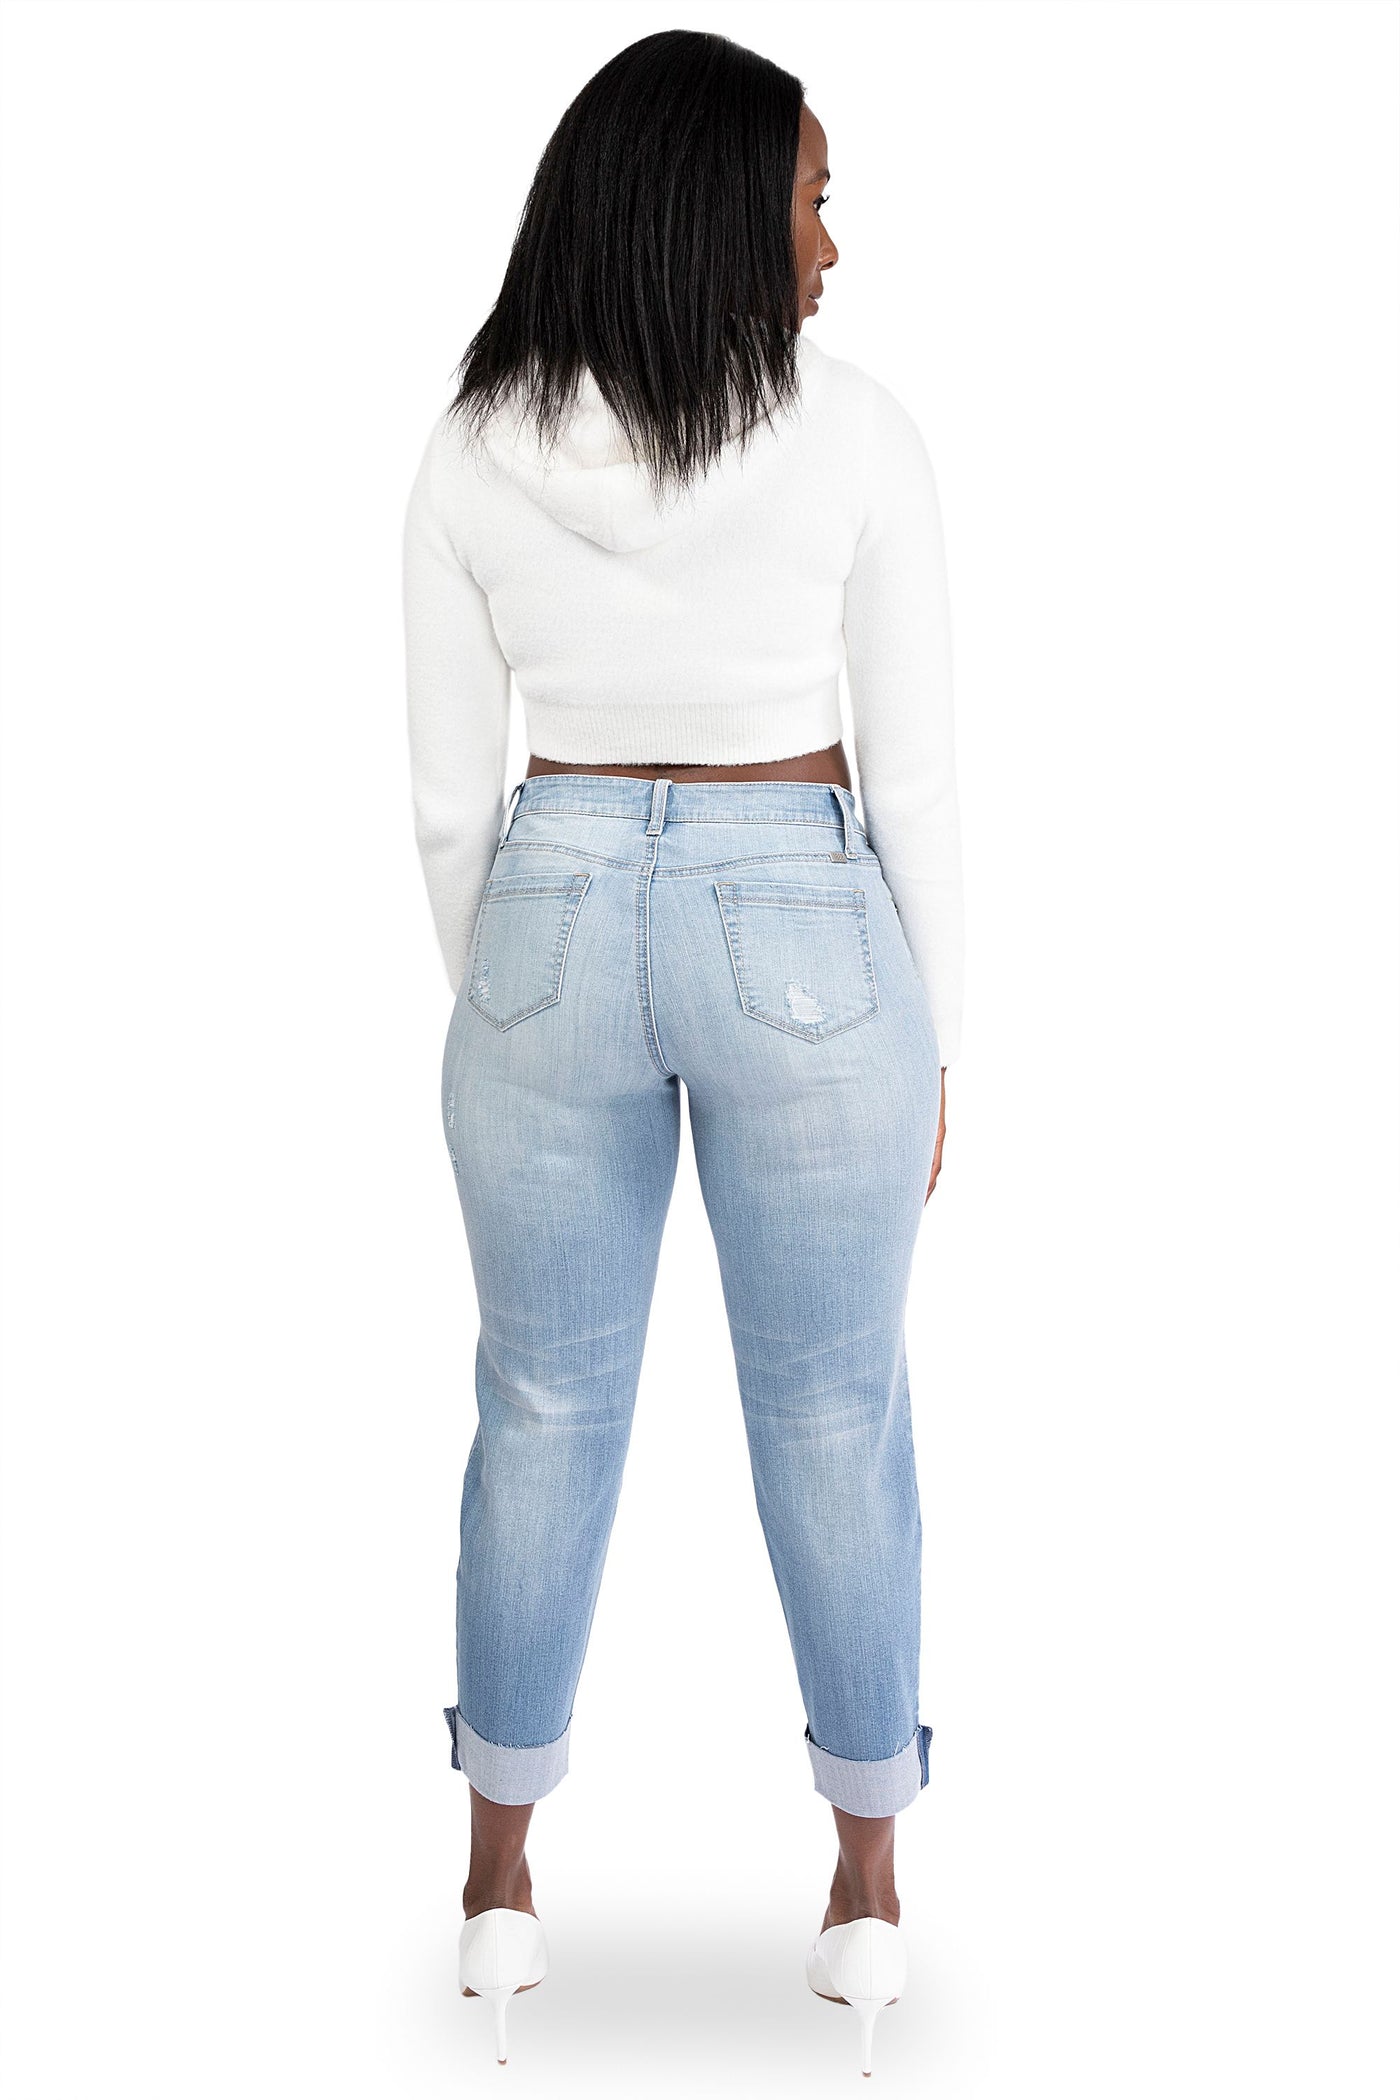 1826 Jeans Women's Plus Size Cuff Rolled Capri Bermuda Short Curvy Denim  Jean 